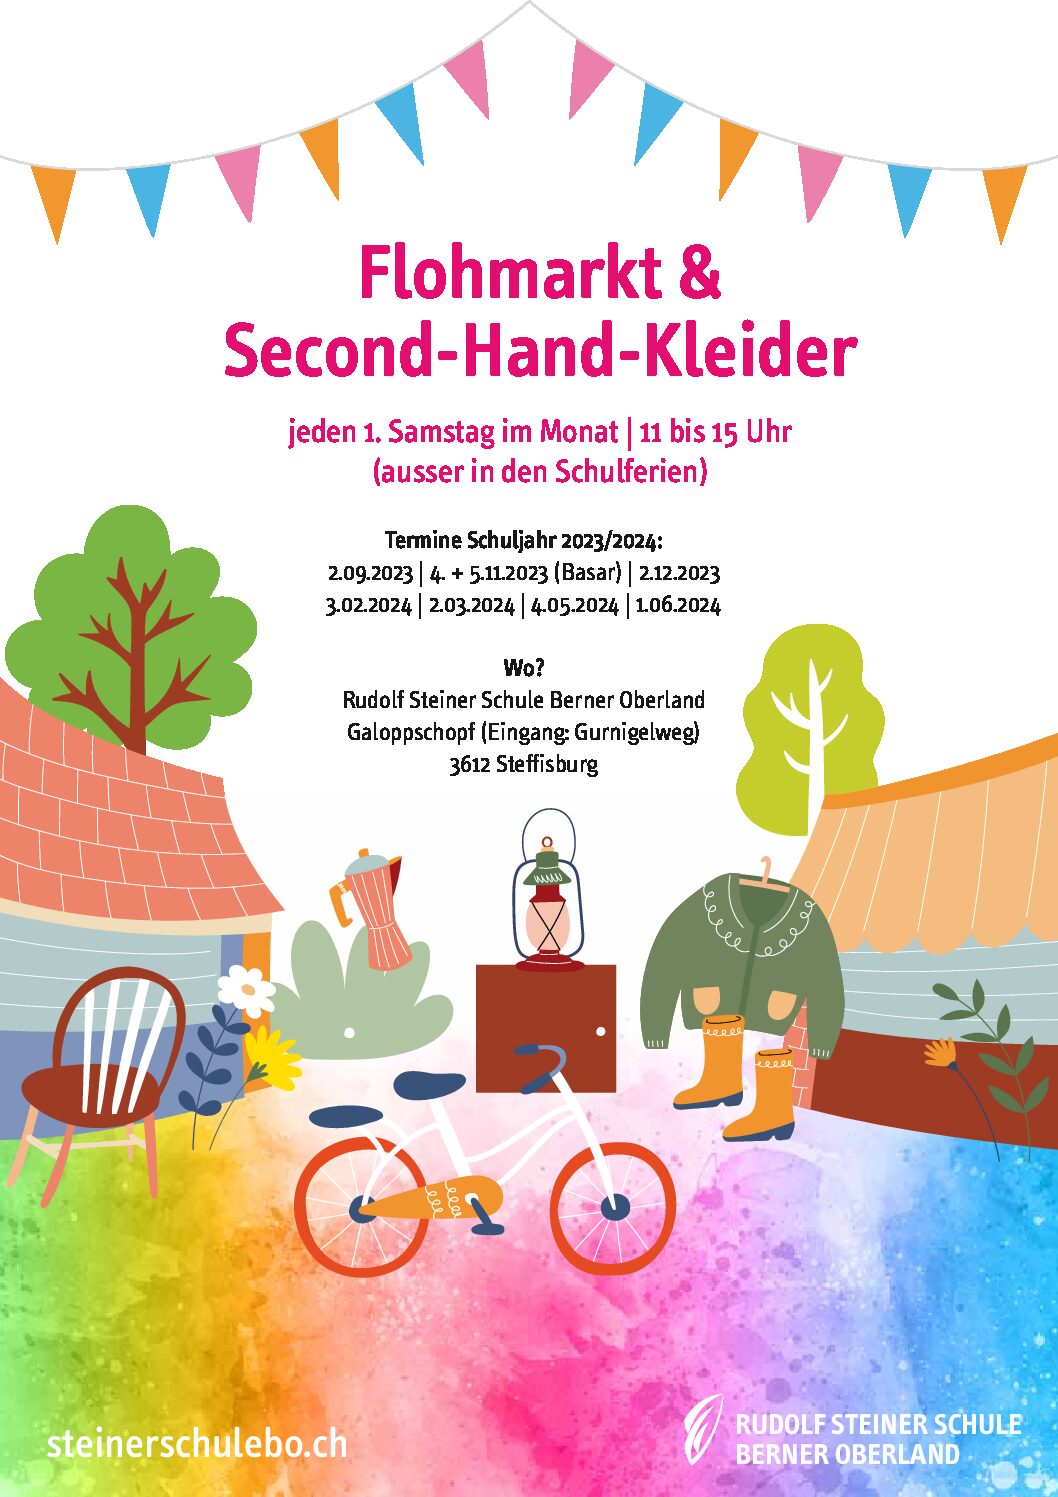 Flohmarkt & Second-Hand-Kleider - Kinderflohmarkt